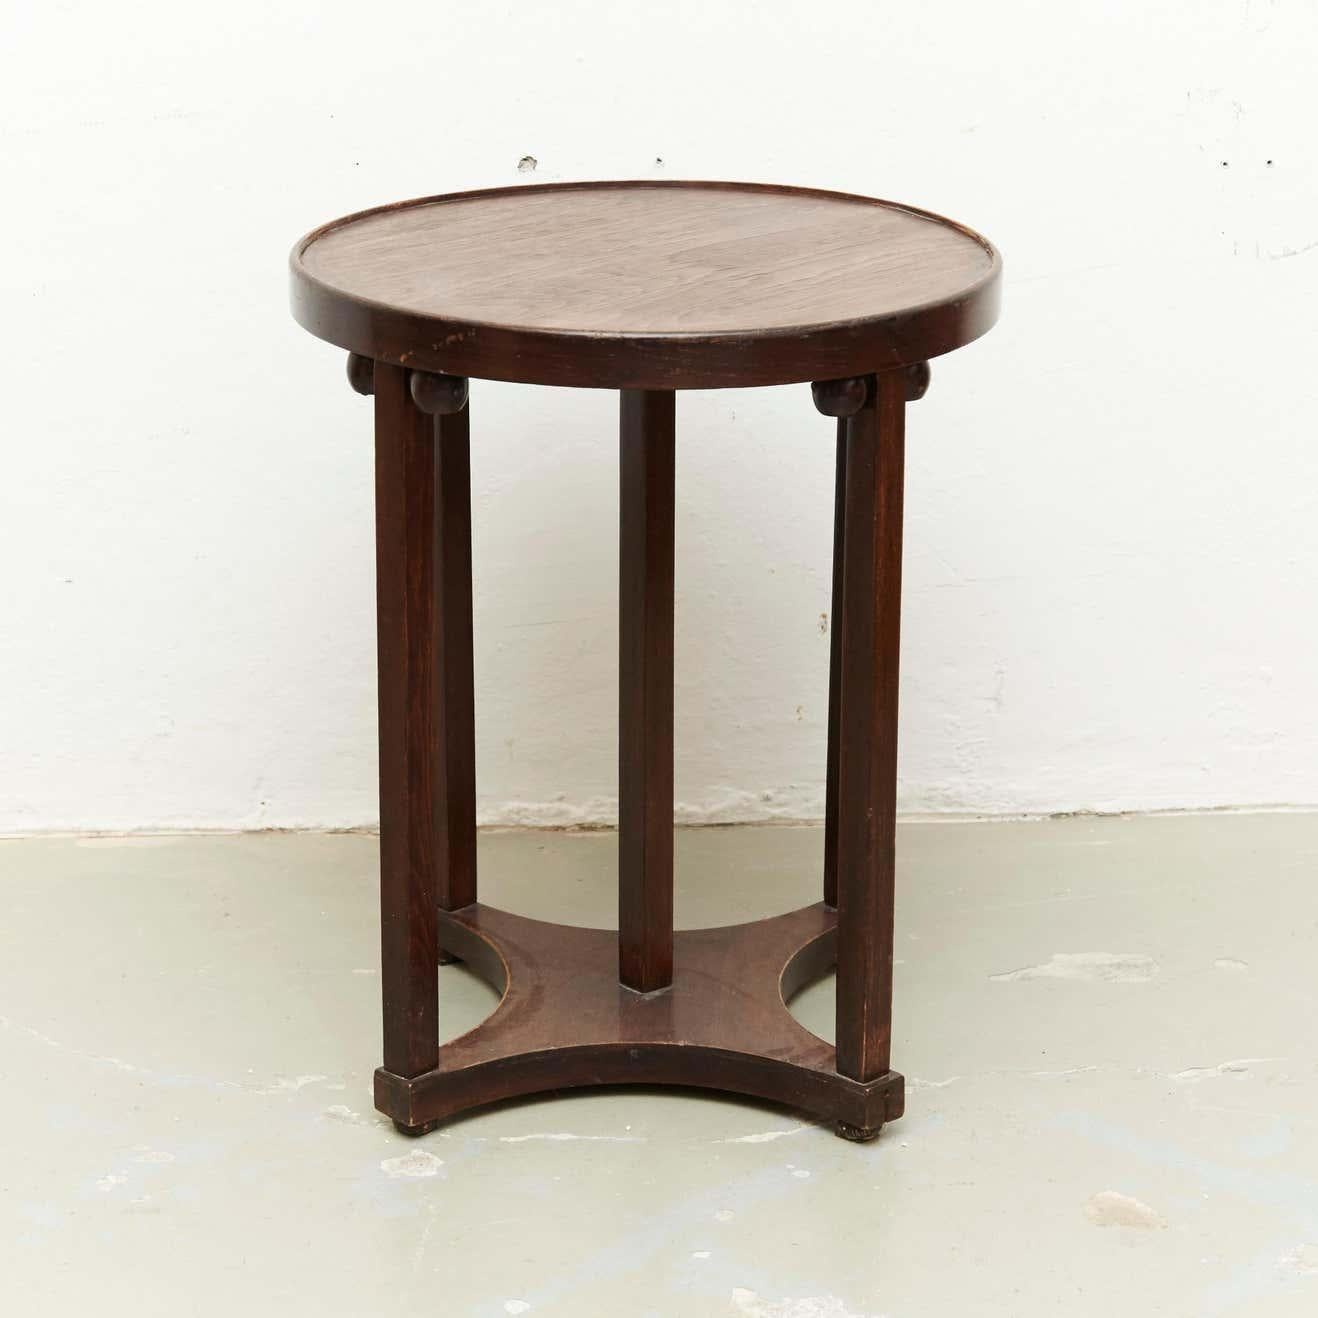 Tisch, entworfen von Josef Hoffmann.
Modell 915/1P Jugendstiltisch von Jacob & Josef Kohn, hergestellt um 1920.

Maße: Durchmesser 60, Höhe 72 cm.

Originaler Zustand mit geringen alters- und gebrauchsbedingten Abnutzungserscheinungen, der eine